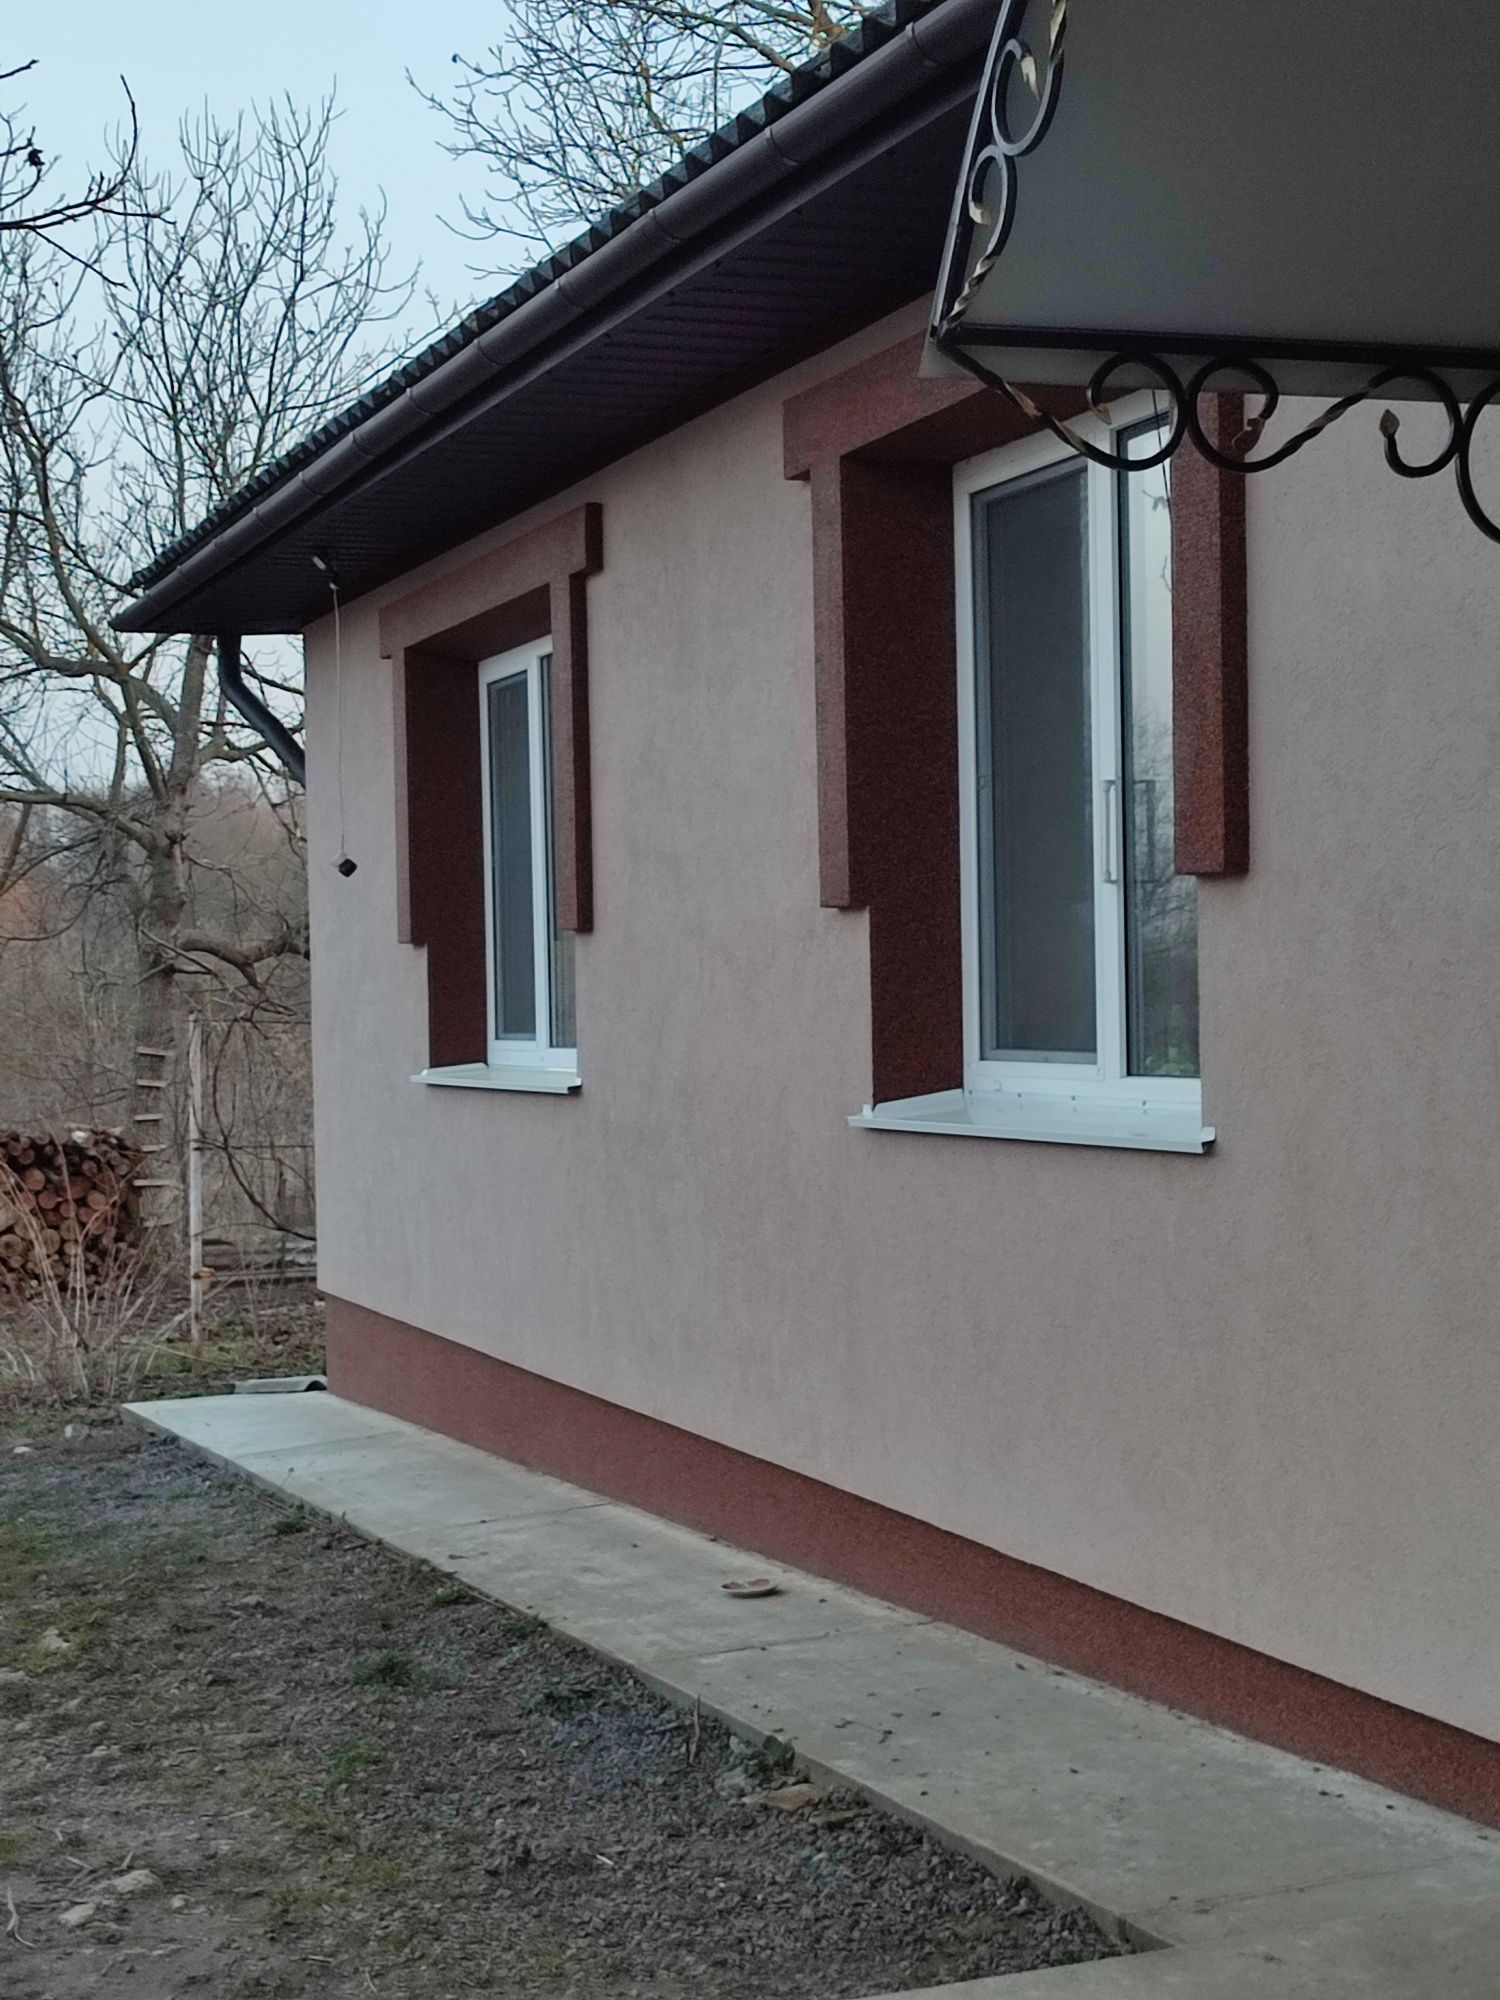 Продам будинок в селі Сеферівка вінницька область Барський район,